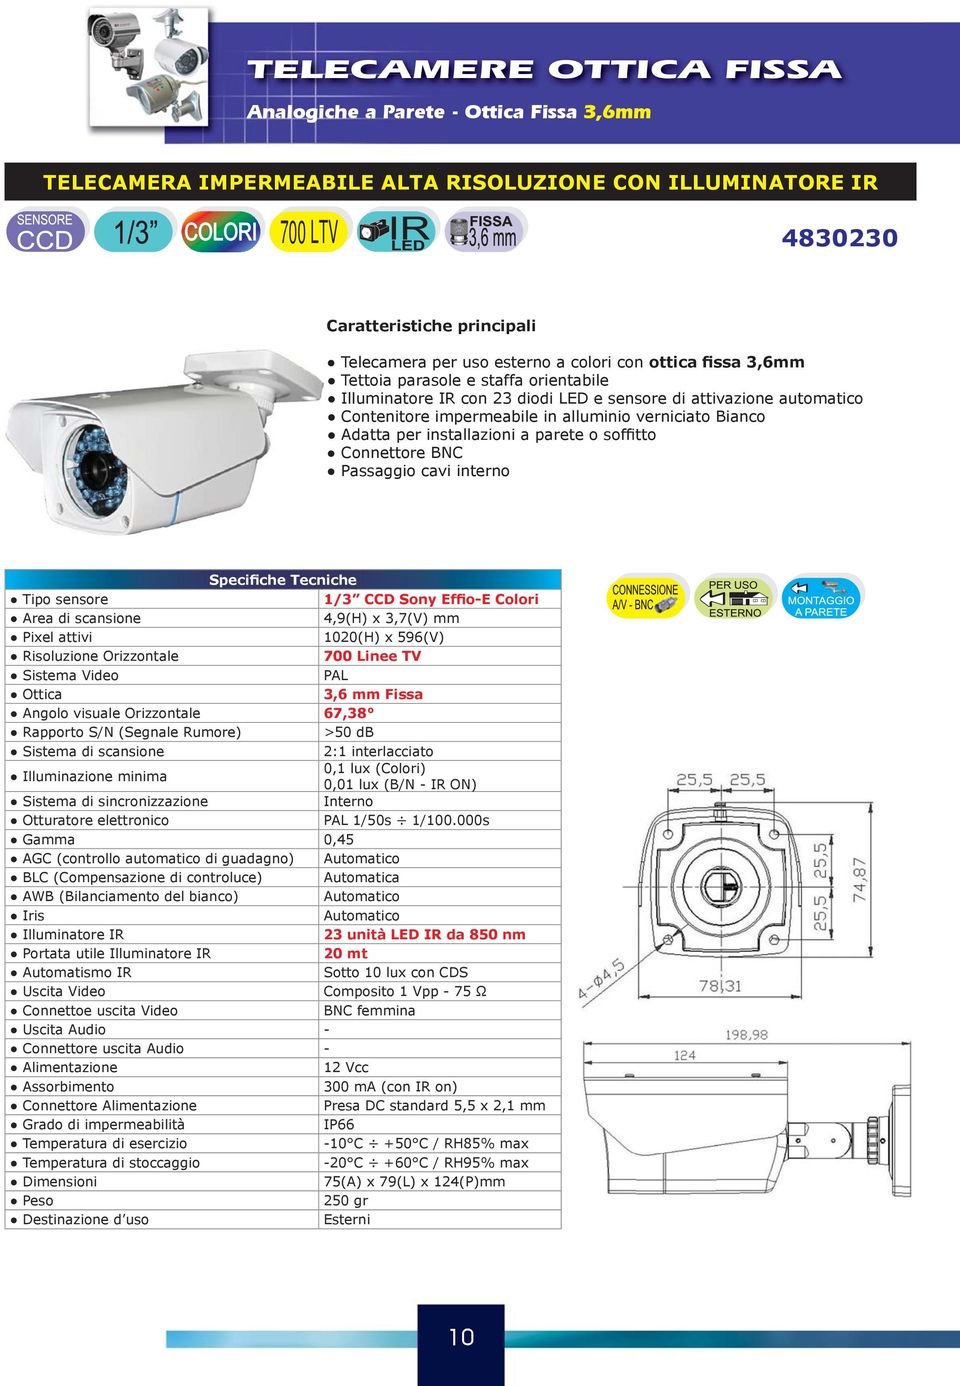 Connettore BNC Passaggio cavi interno 1/3 CCD Sony Effio-E Colori 1020(H) x 596(V) 700 Linee TV 3,6 mm Fissa Angolo visuale Orizzontale 67,38 >50 db 0,1 lux (Colori) 0,01 lux (B/N - IR ON)